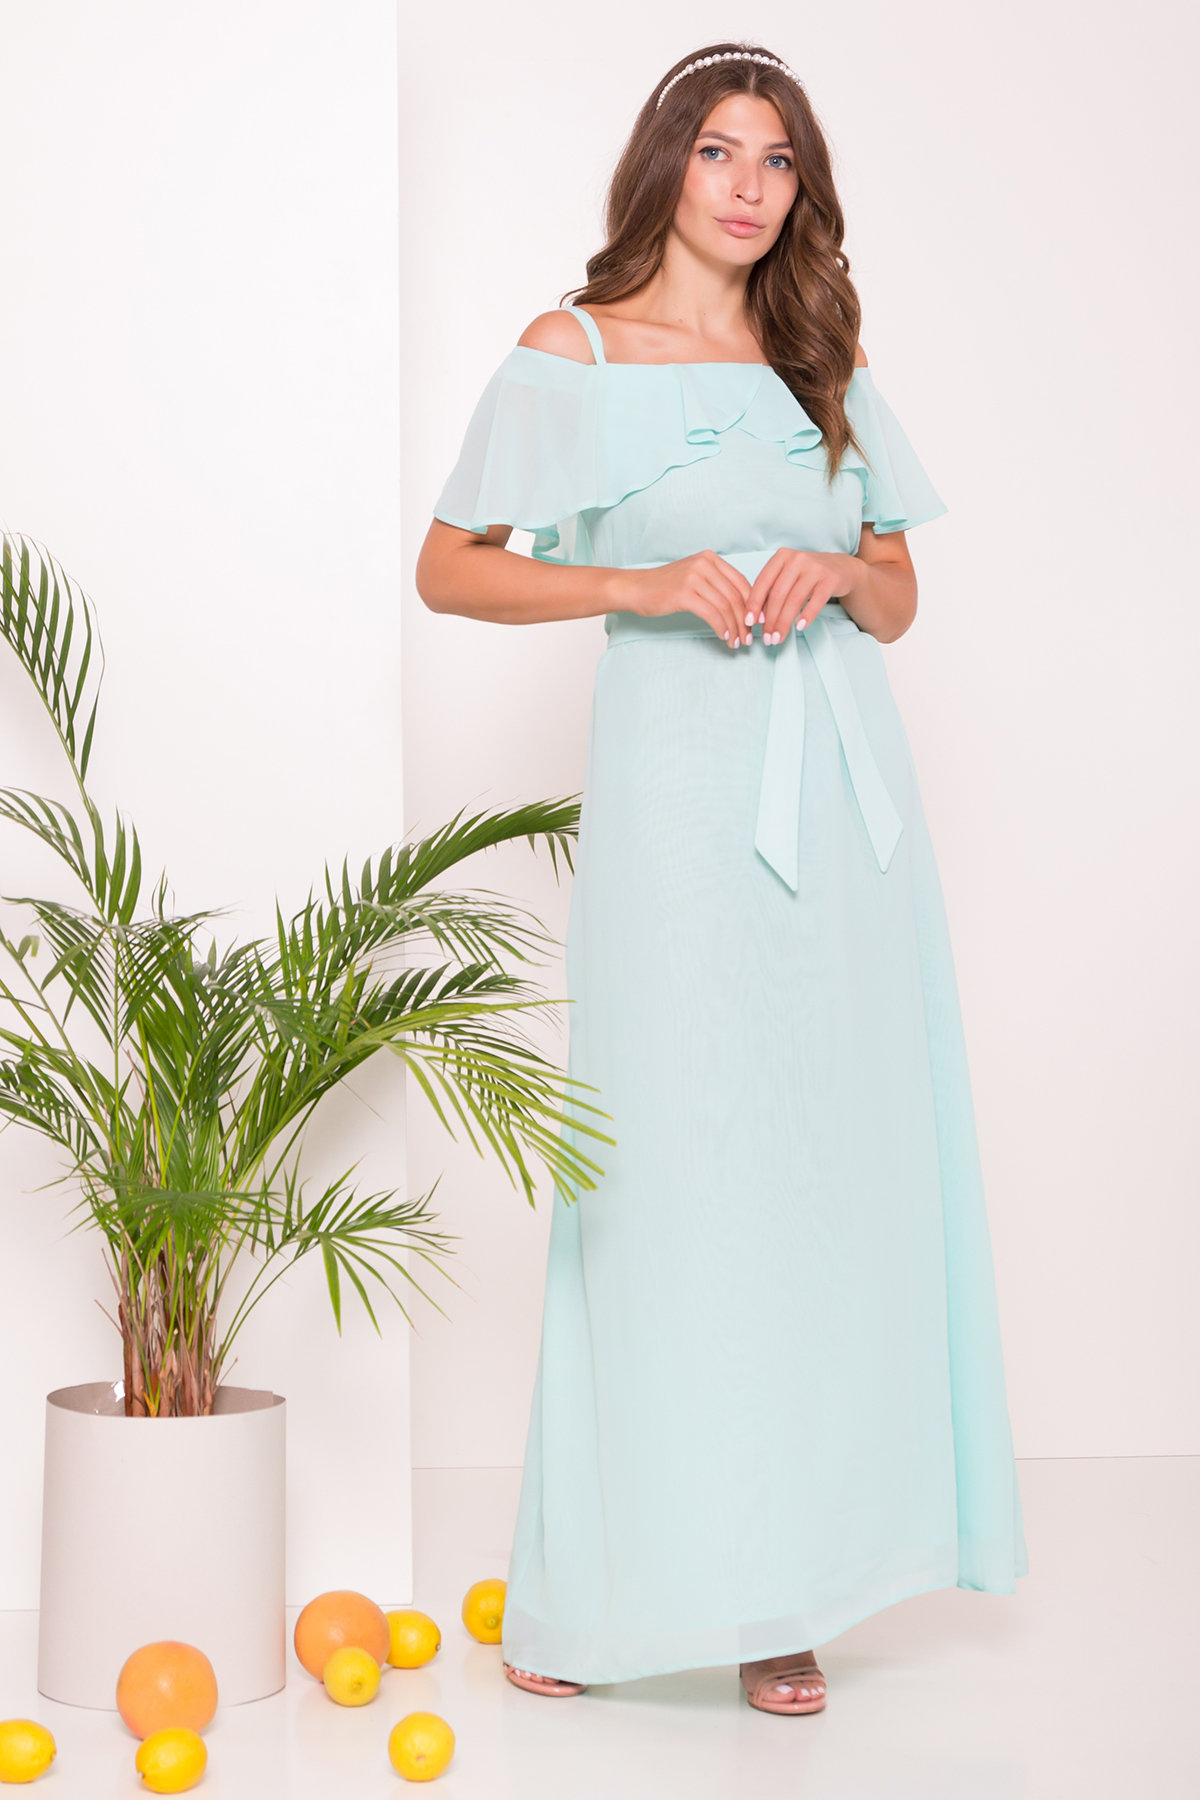 Платье Пикабу 7449 АРТ. 43243 Цвет: Мята - фото 2, интернет магазин tm-modus.ru